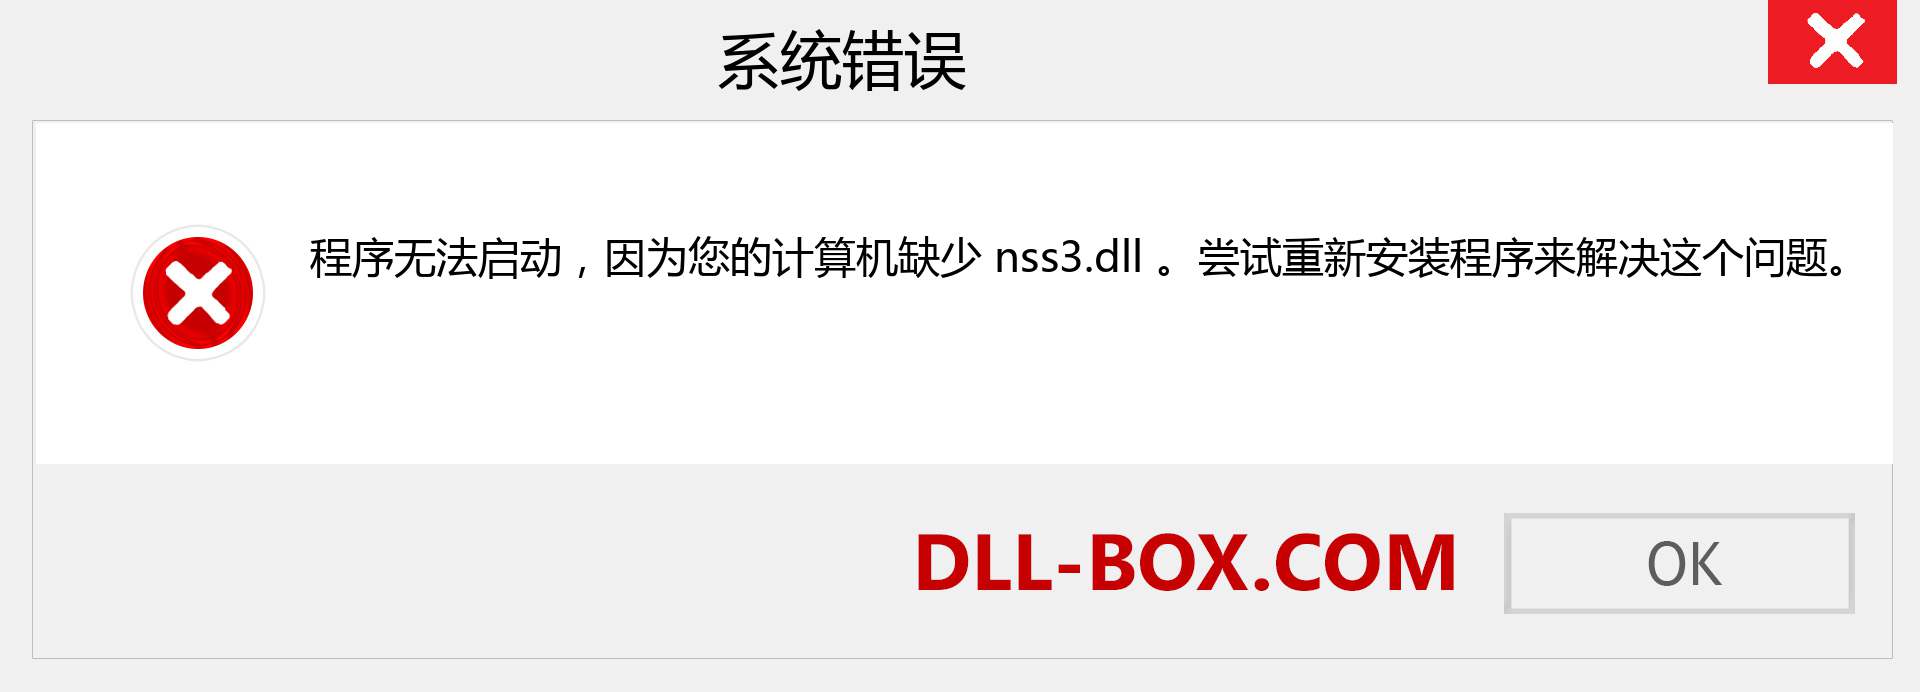 nss3.dll 文件丢失？。 适用于 Windows 7、8、10 的下载 - 修复 Windows、照片、图像上的 nss3 dll 丢失错误